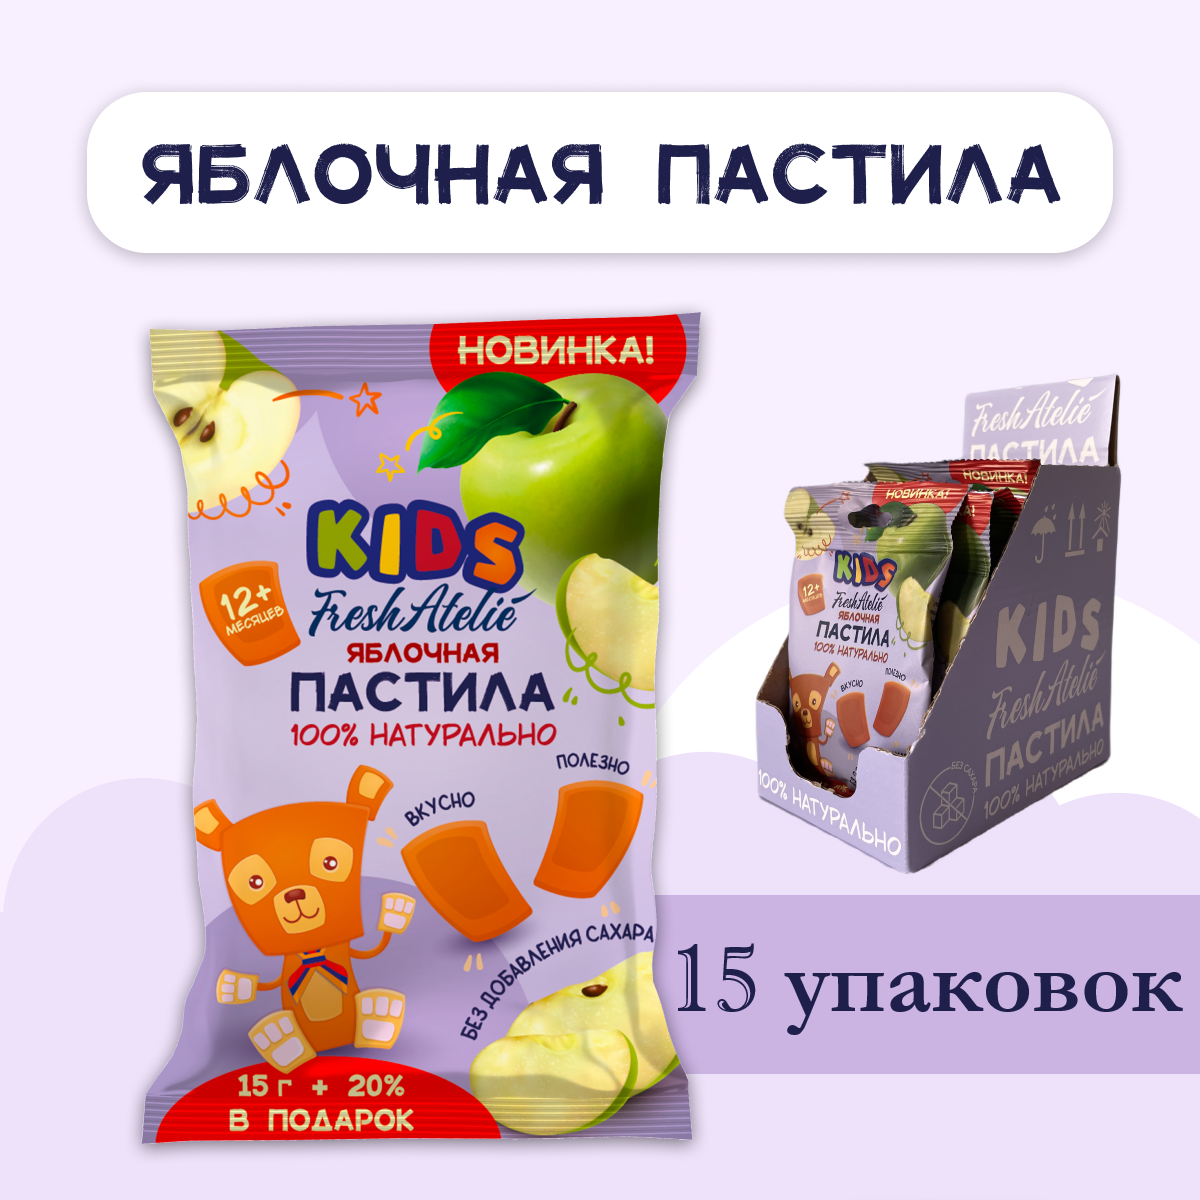 Пастила яблочная для детей FRESH ATELIE KIDS Пастилки 15гр+20%, 15 упаковок